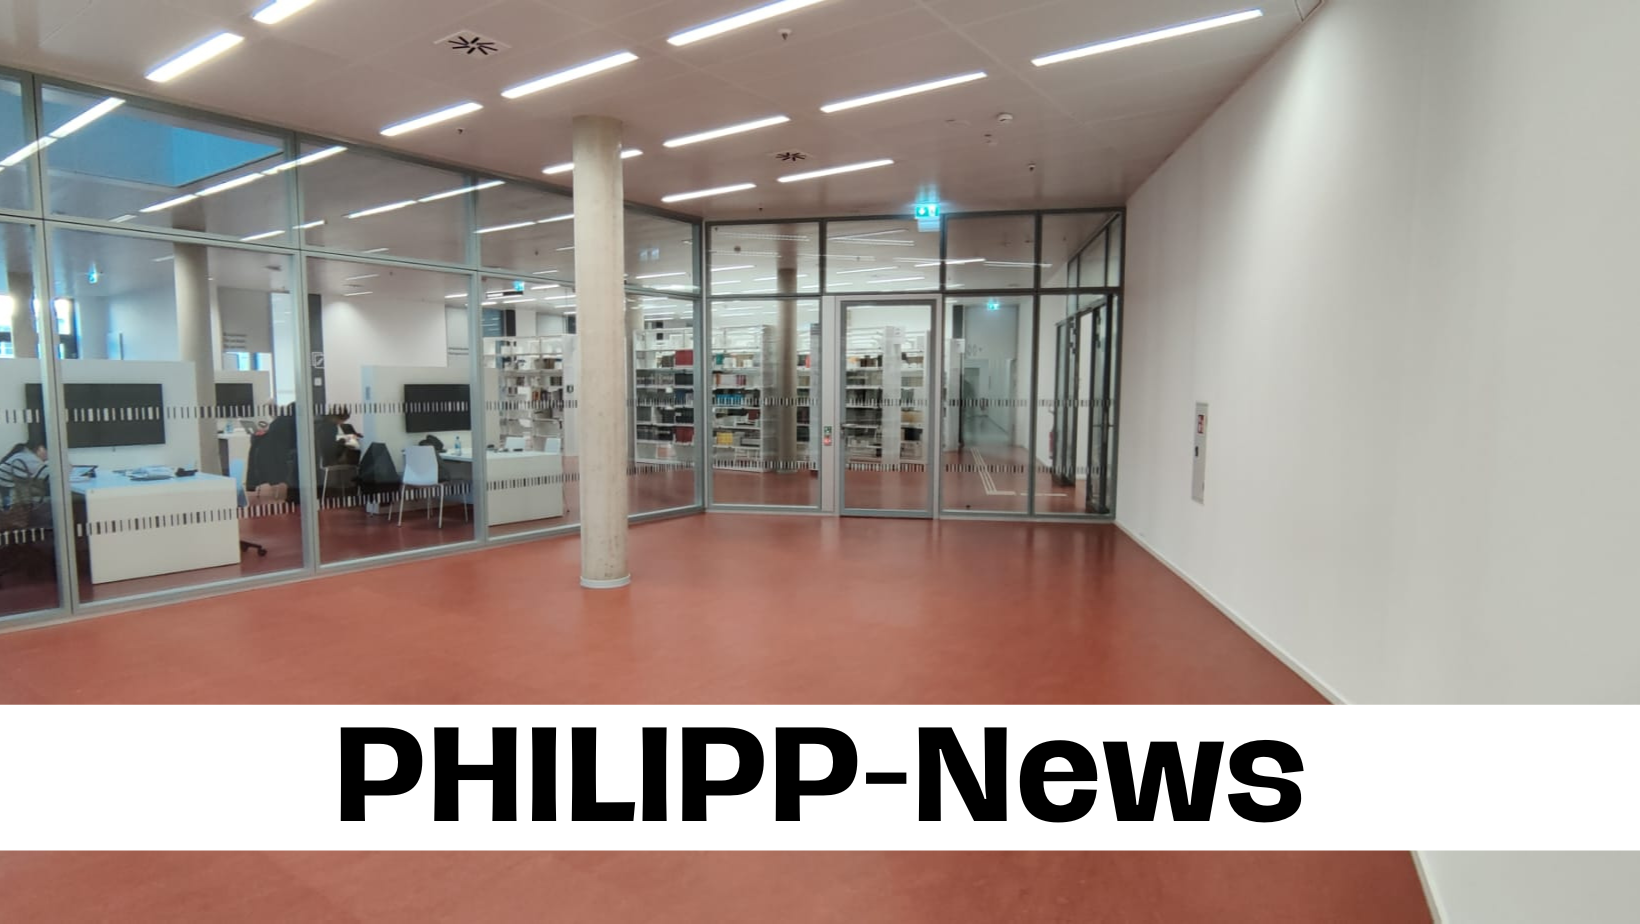 PHILIPP-News: Ergometer und neue Arbeitsplätze – Umgestaltung der Unibib